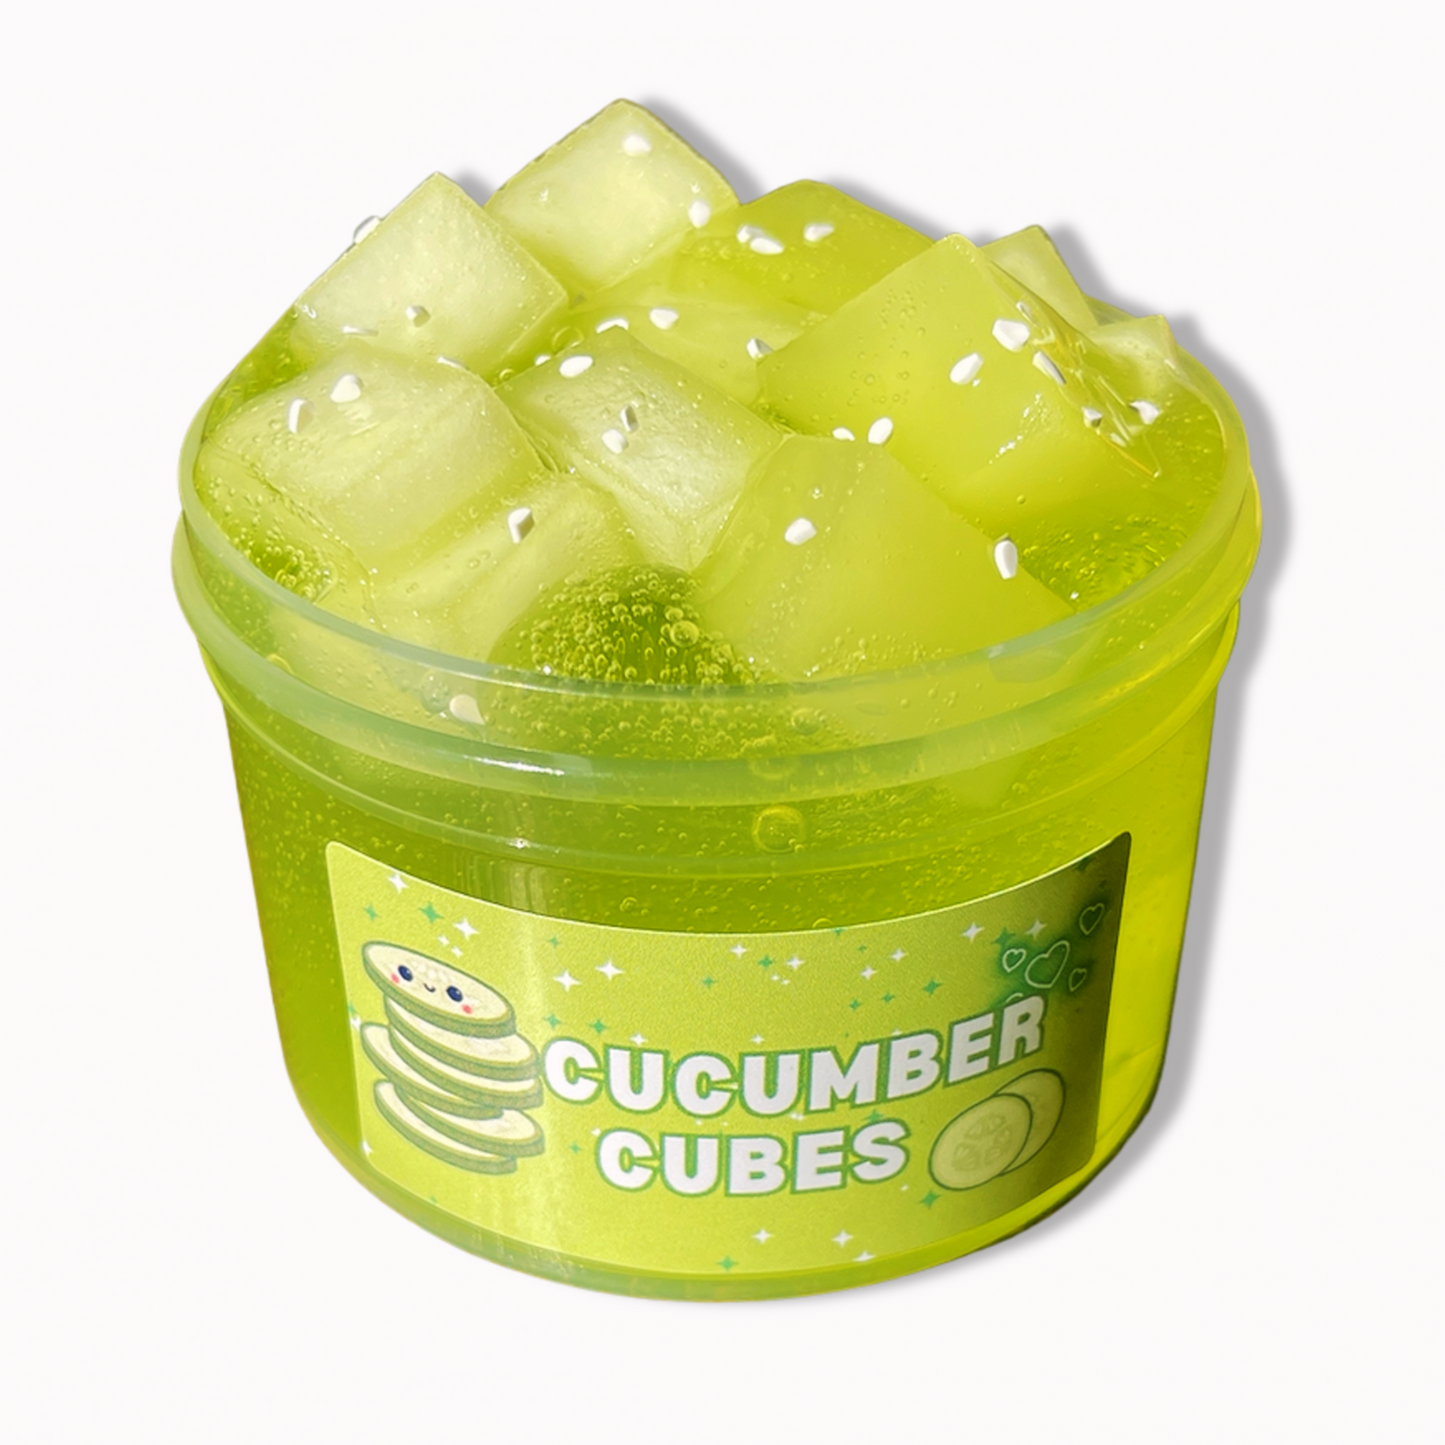 Cucumber Cubes